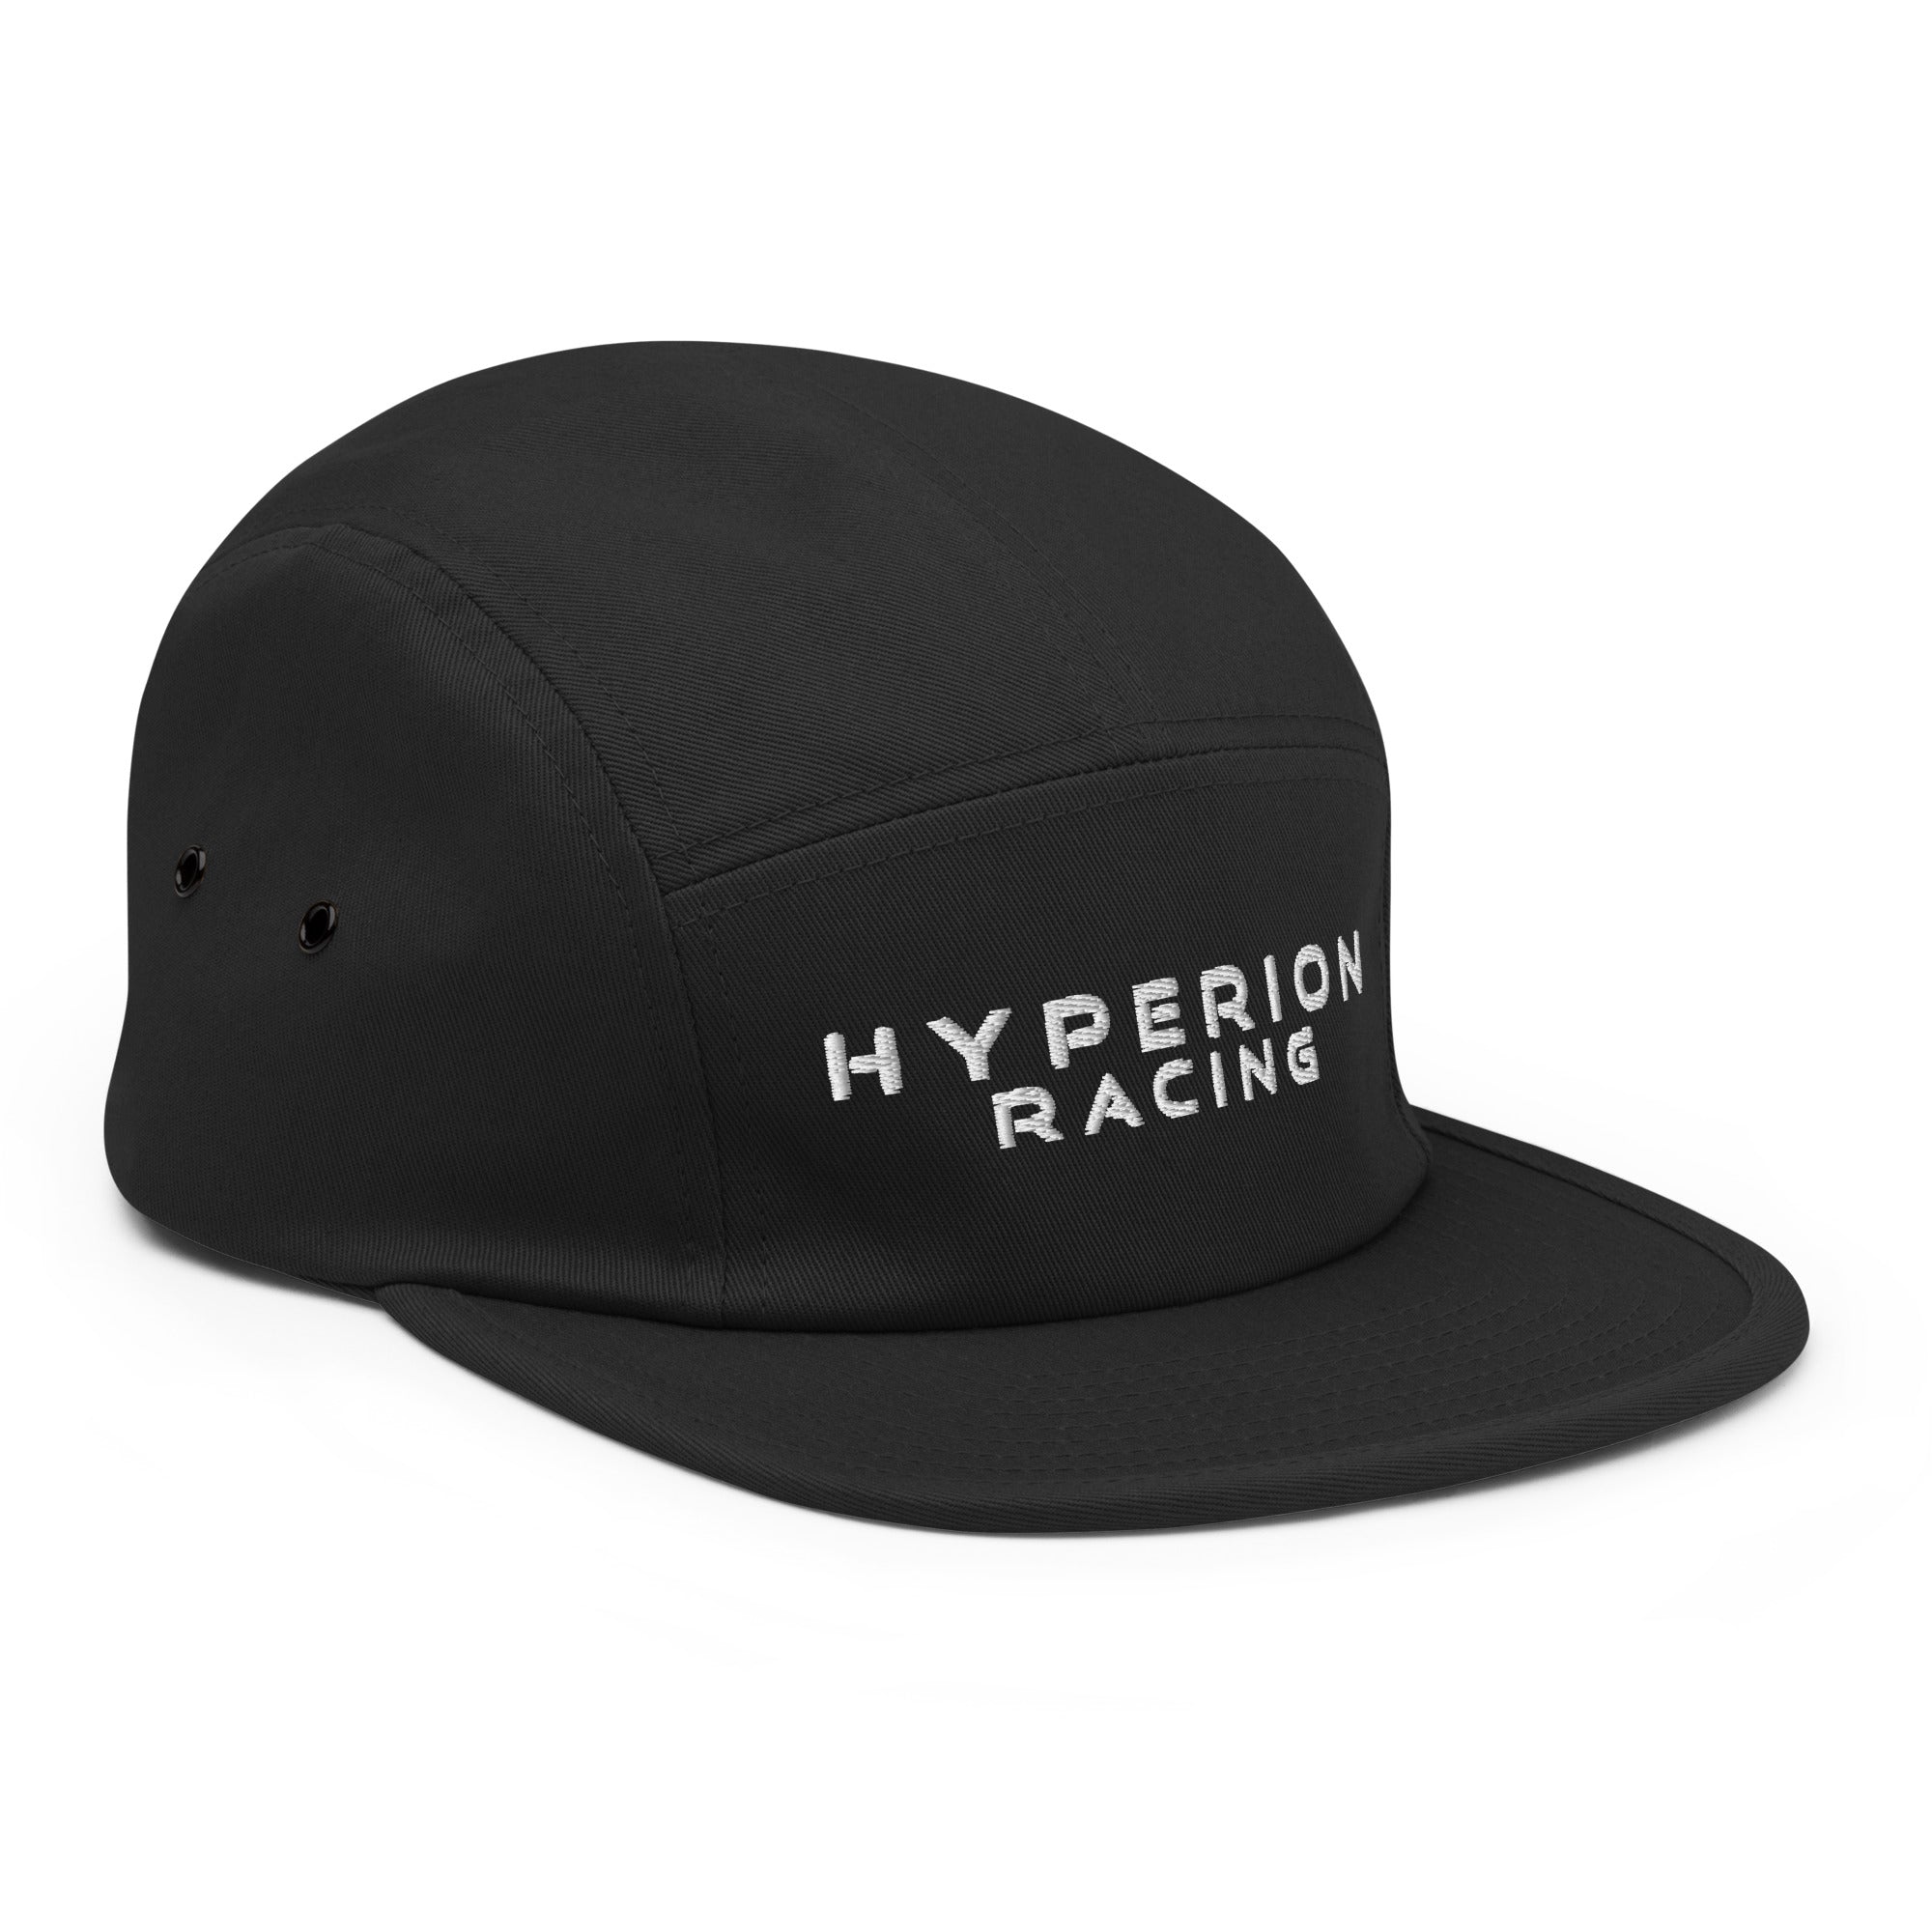 Hyperion Racing Five Panel Cap